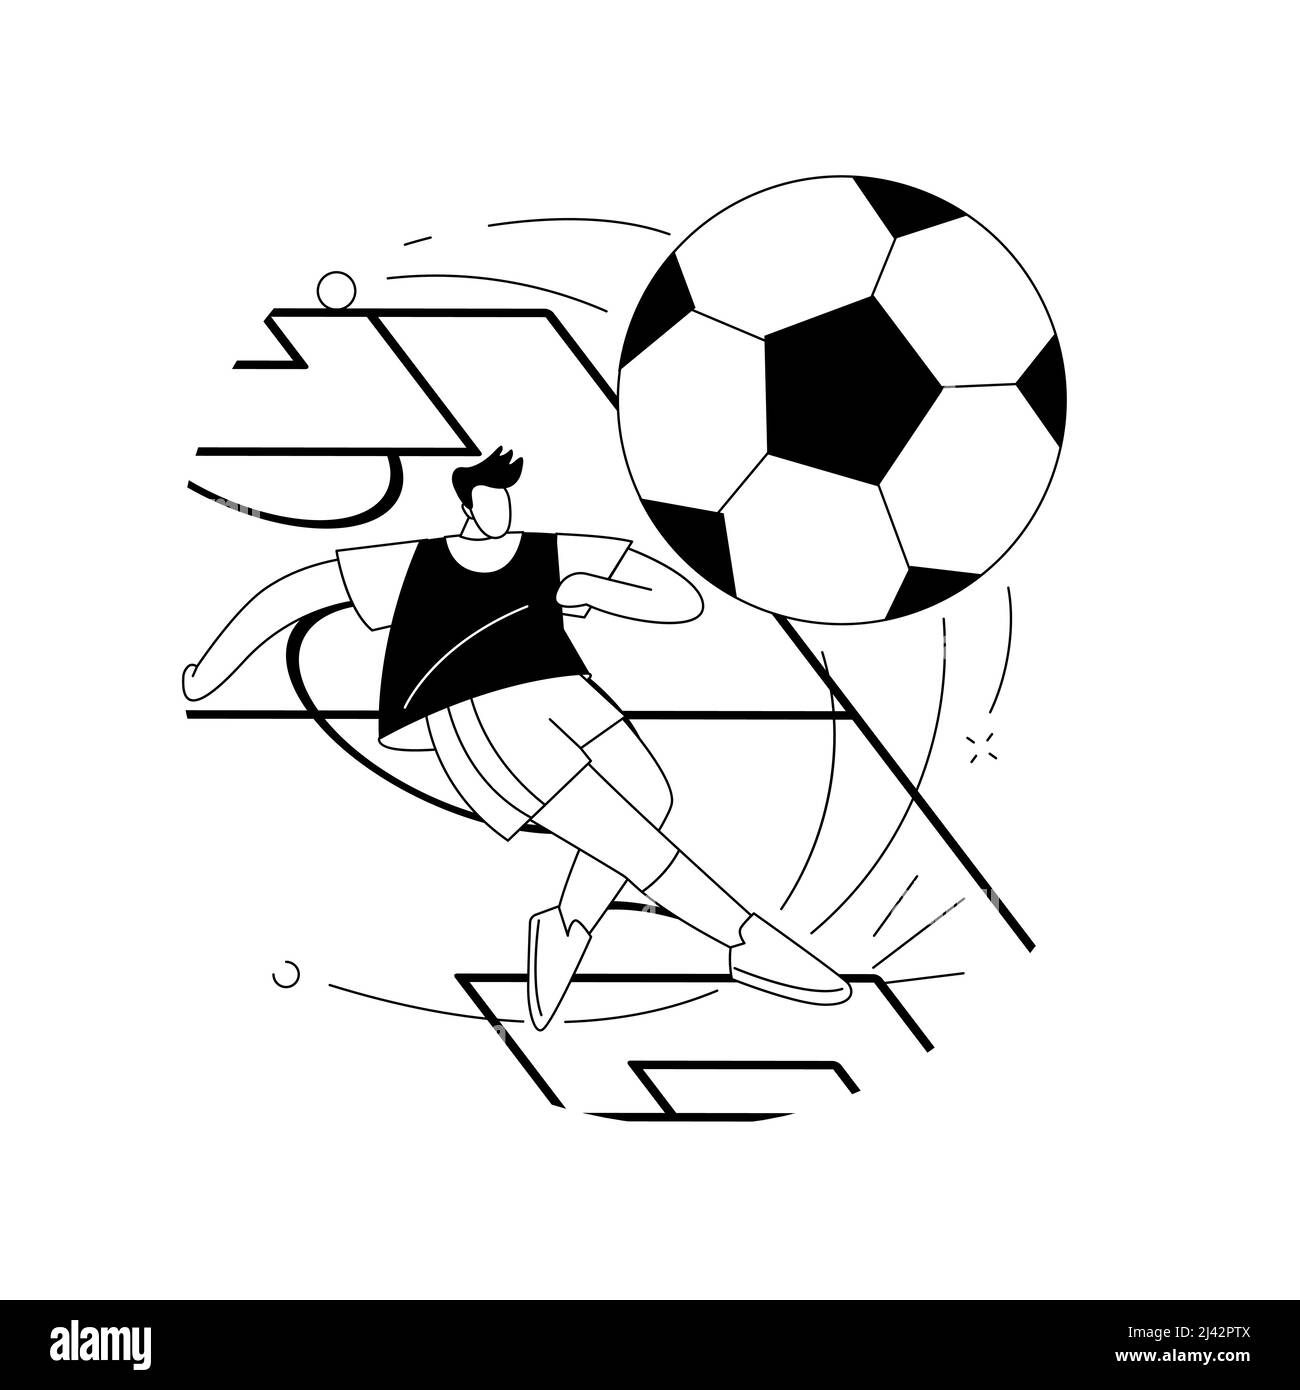 Abstrakte Fußball-Konzept-Vektor-Illustration. Mannschaftssport, Ball spielen, Profi-Weltmeisterschaft, Sportspiel, Spieleruniform, Fußballstadion, winne Stock Vektor